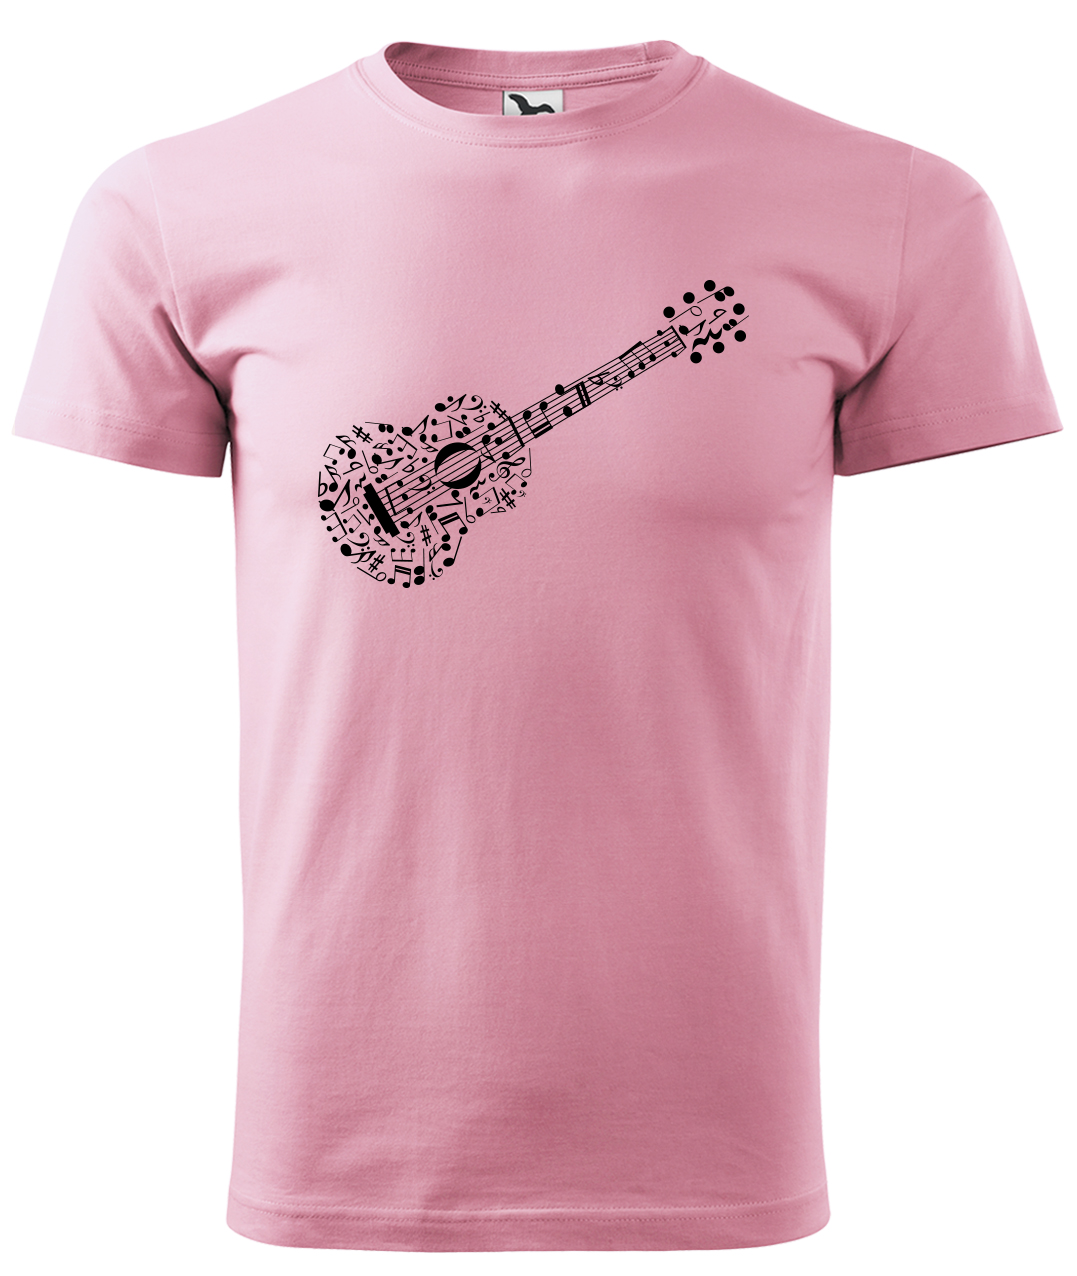 Dětské tričko s kytarou - Kytara z not Velikost: 12 let / 158 cm, Barva: Růžová (30), Délka rukávu: Krátký rukáv